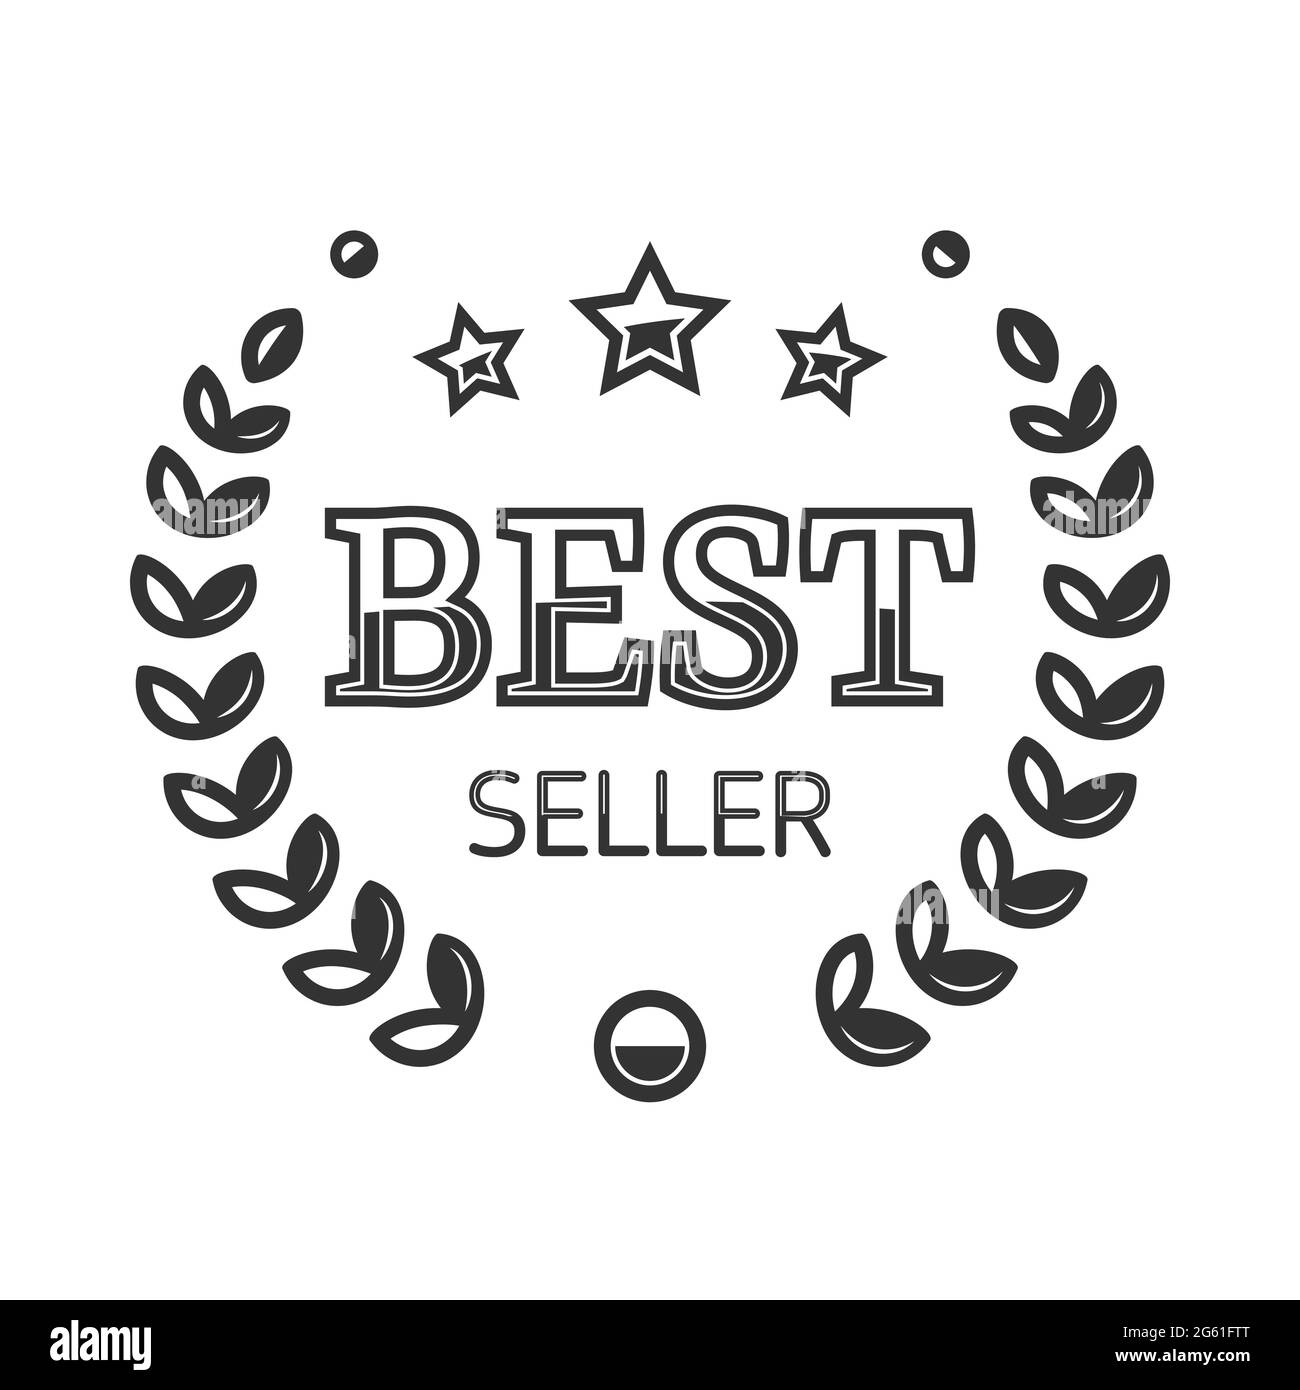 https://c8.alamy.com/comp/2G61FTT/best-seller-vector-logo-best-seller-label-shopping-rating-symbol-2G61FTT.jpg